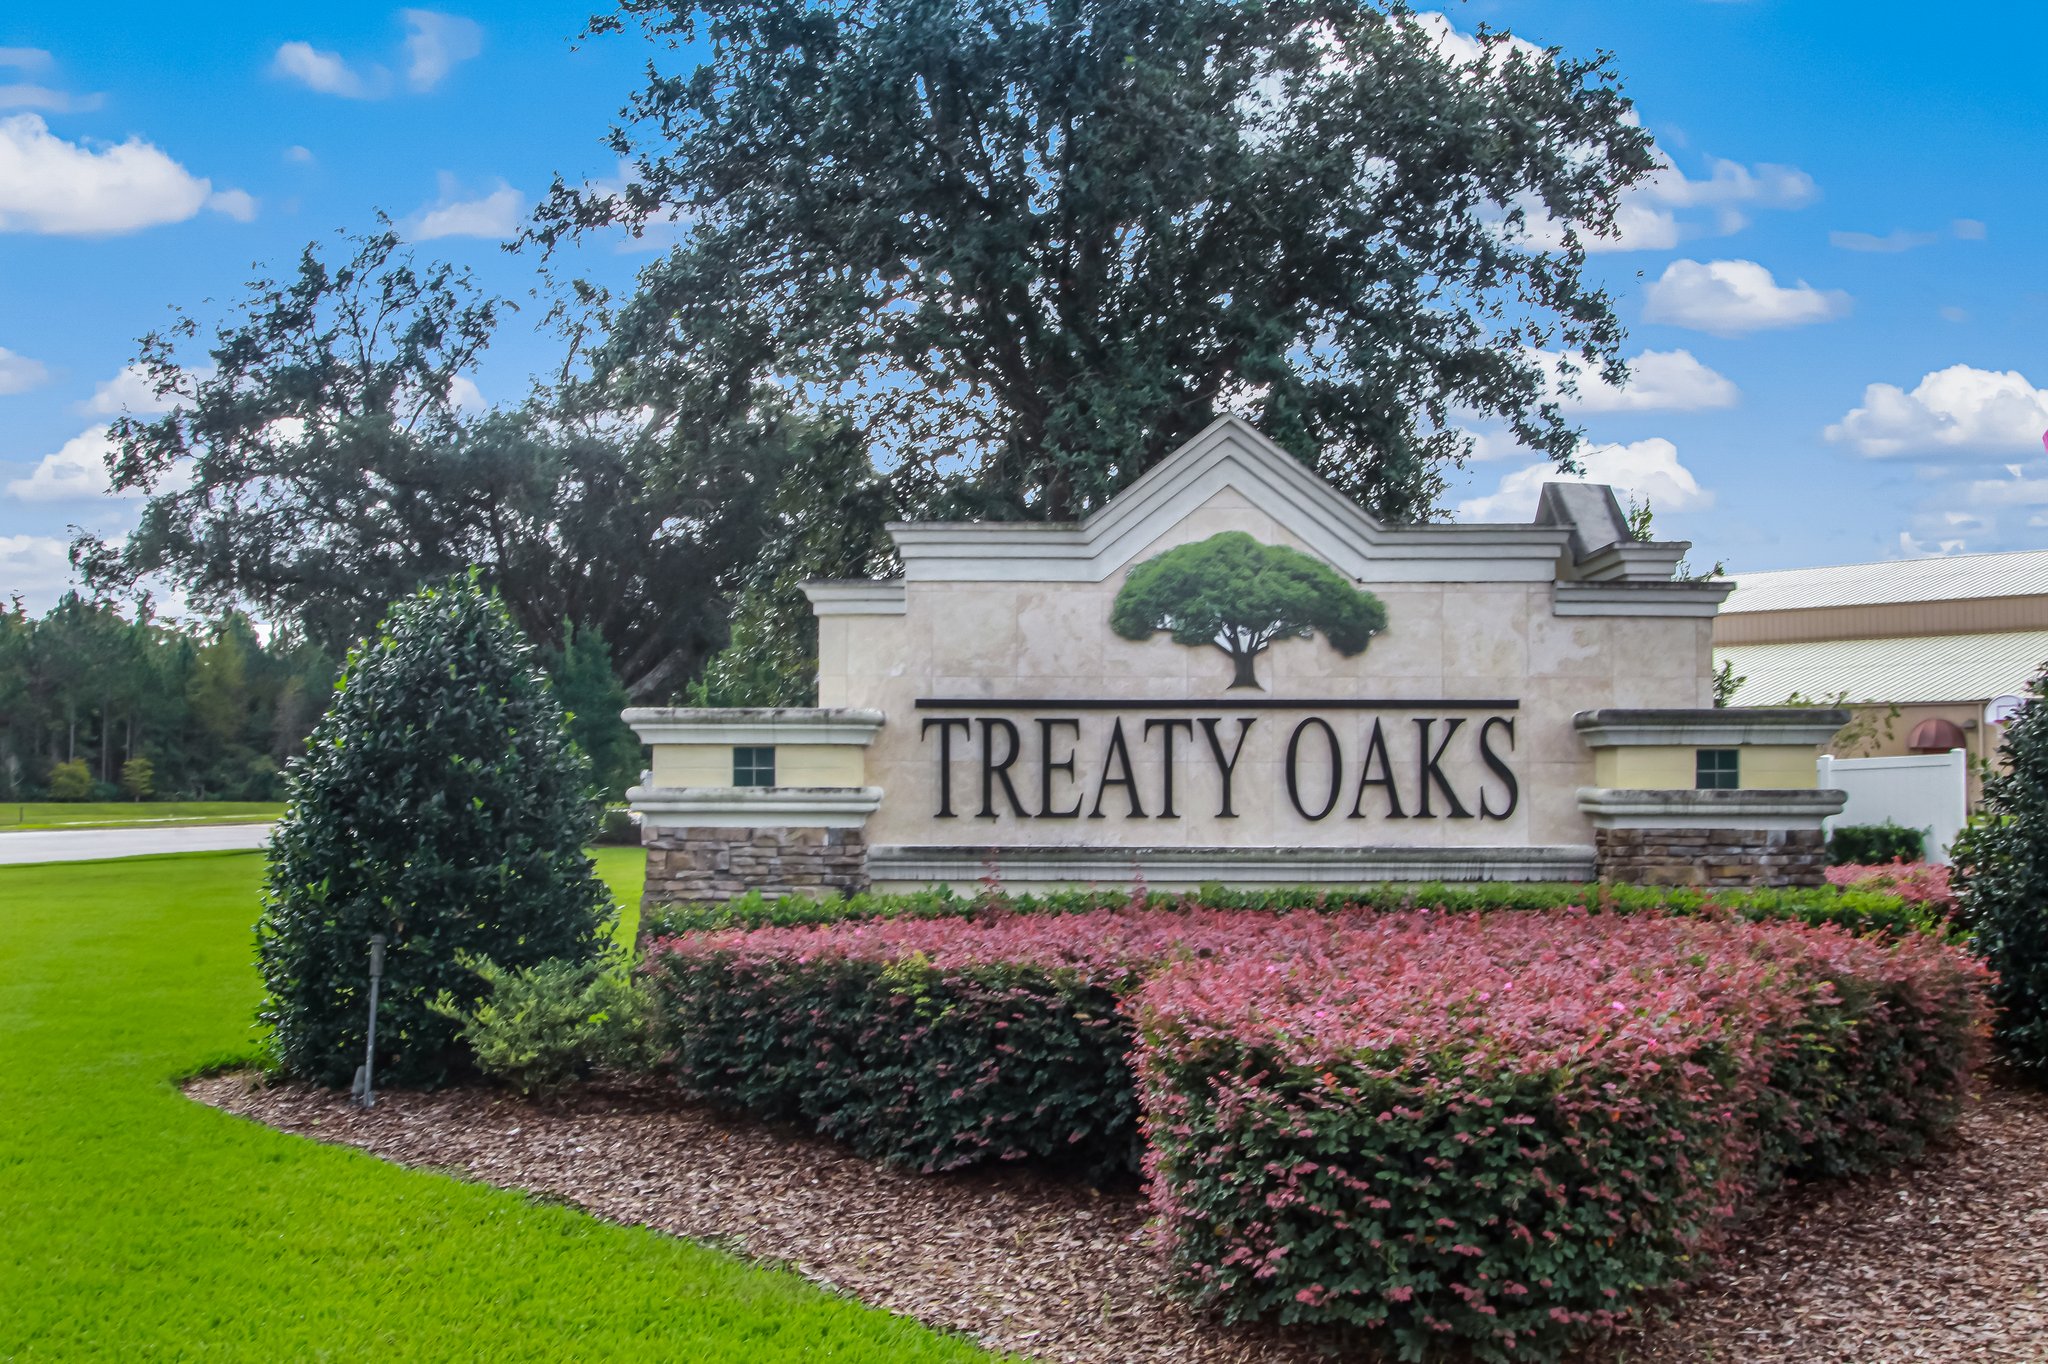 Treaty Oaks